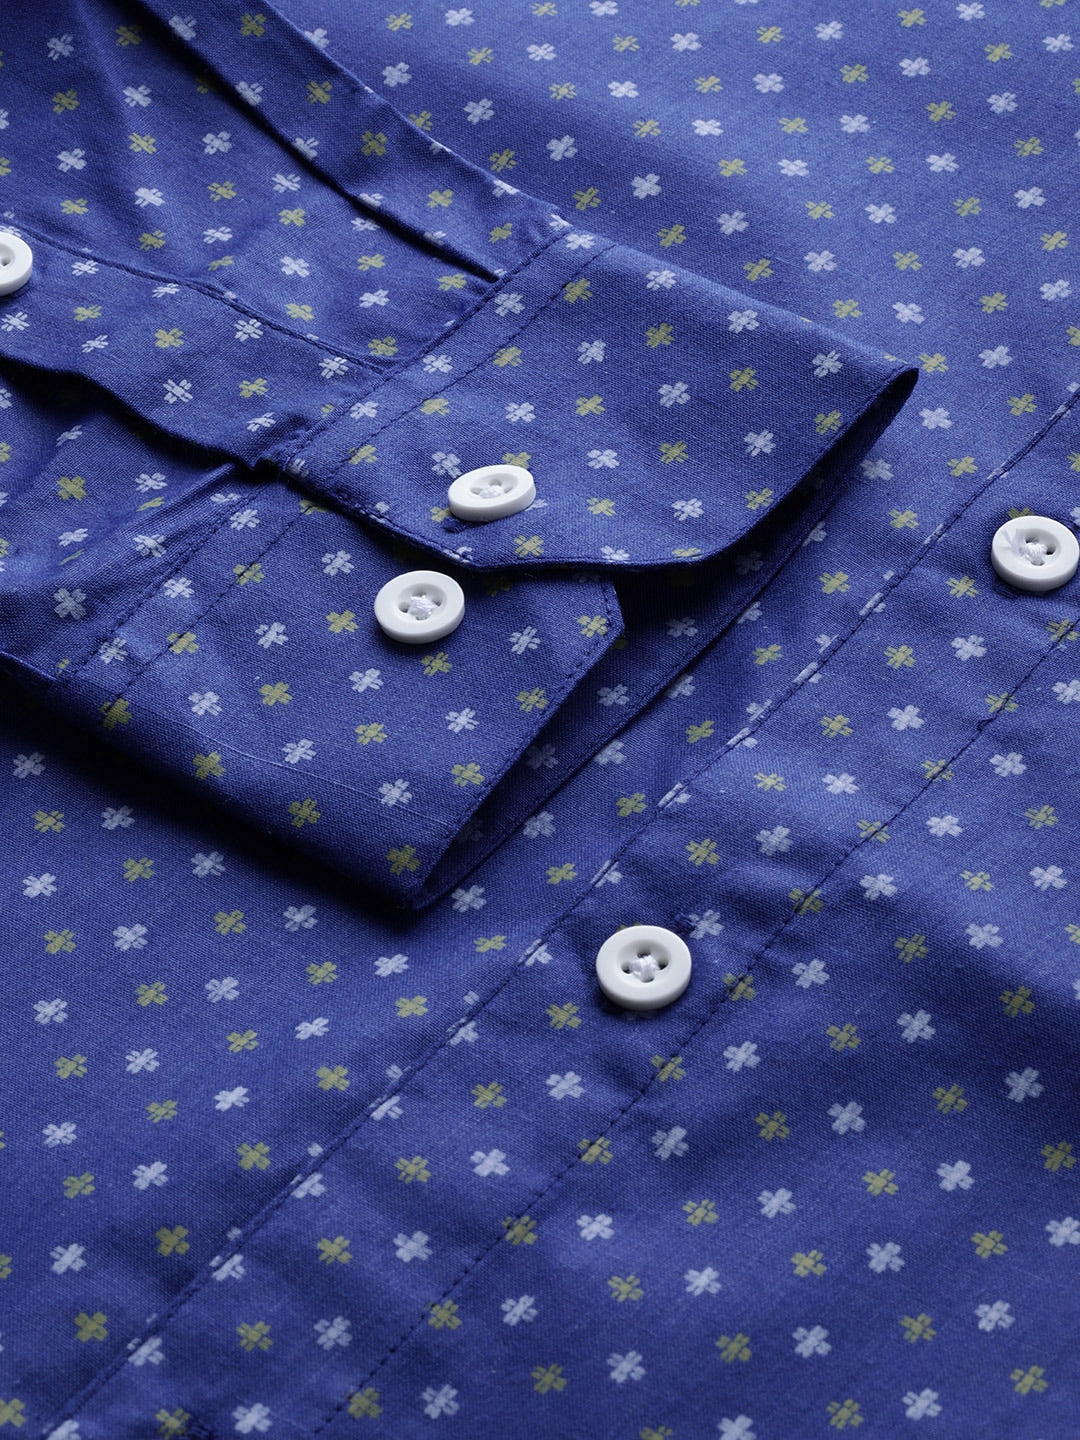 Jainish Blue Men's Cotton Printed Formal Shirts